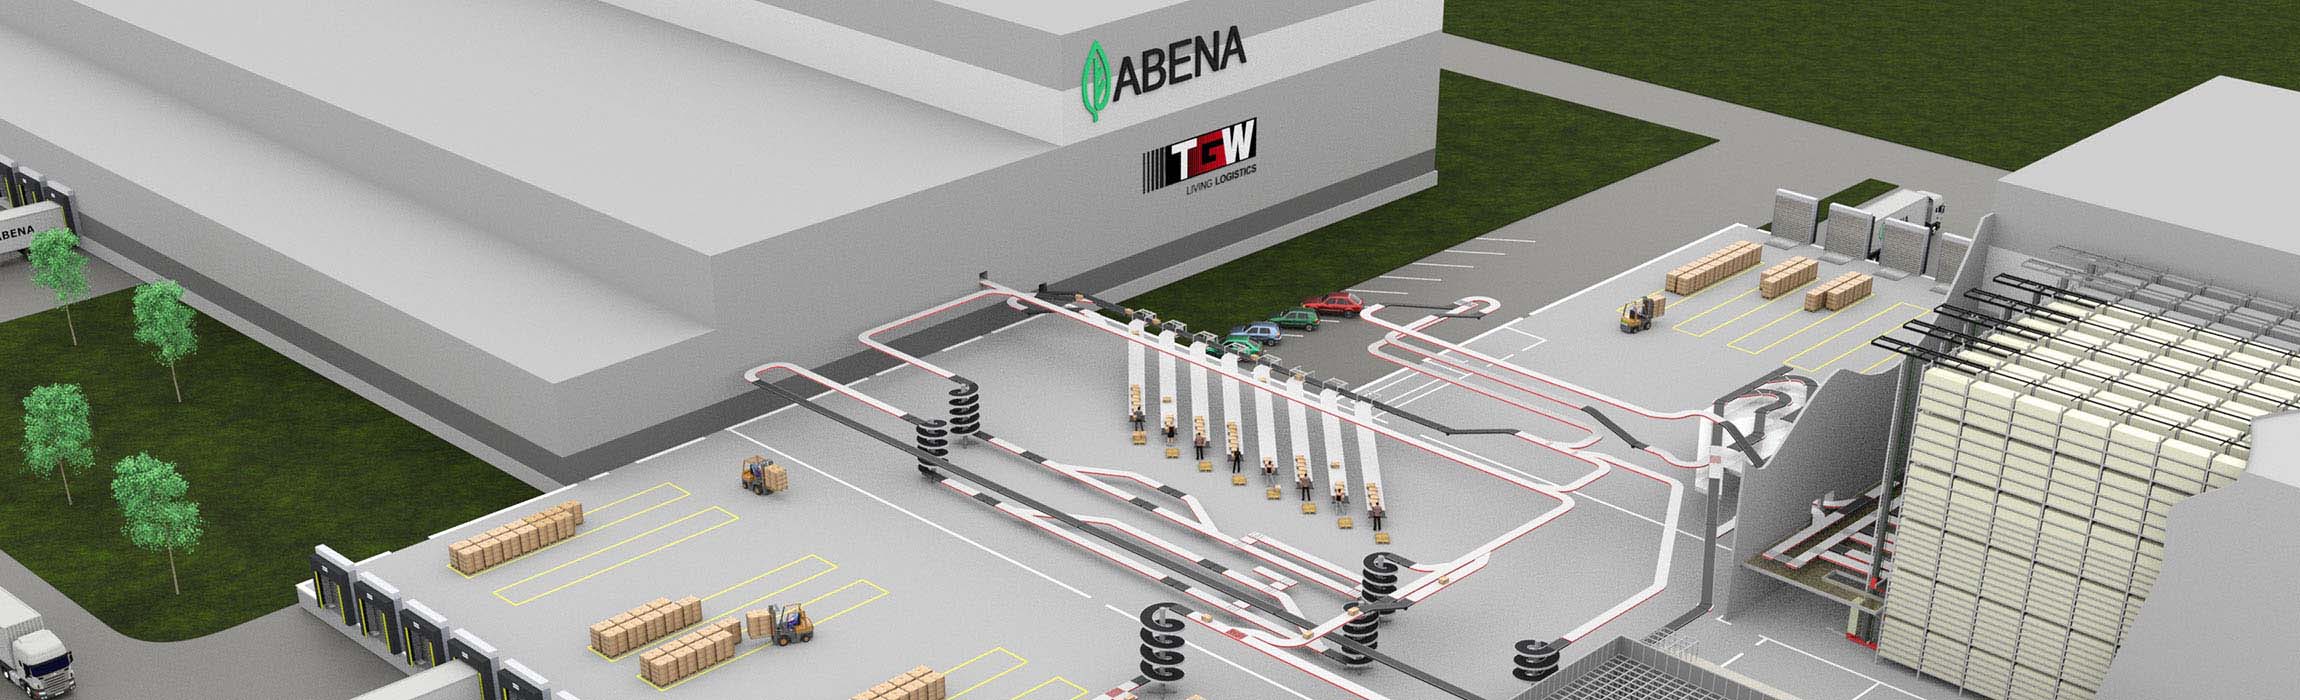 Abena erweitert ihr Logistikzentrum mit TGWs energieeffizienten fördertechnik-Netzwerks